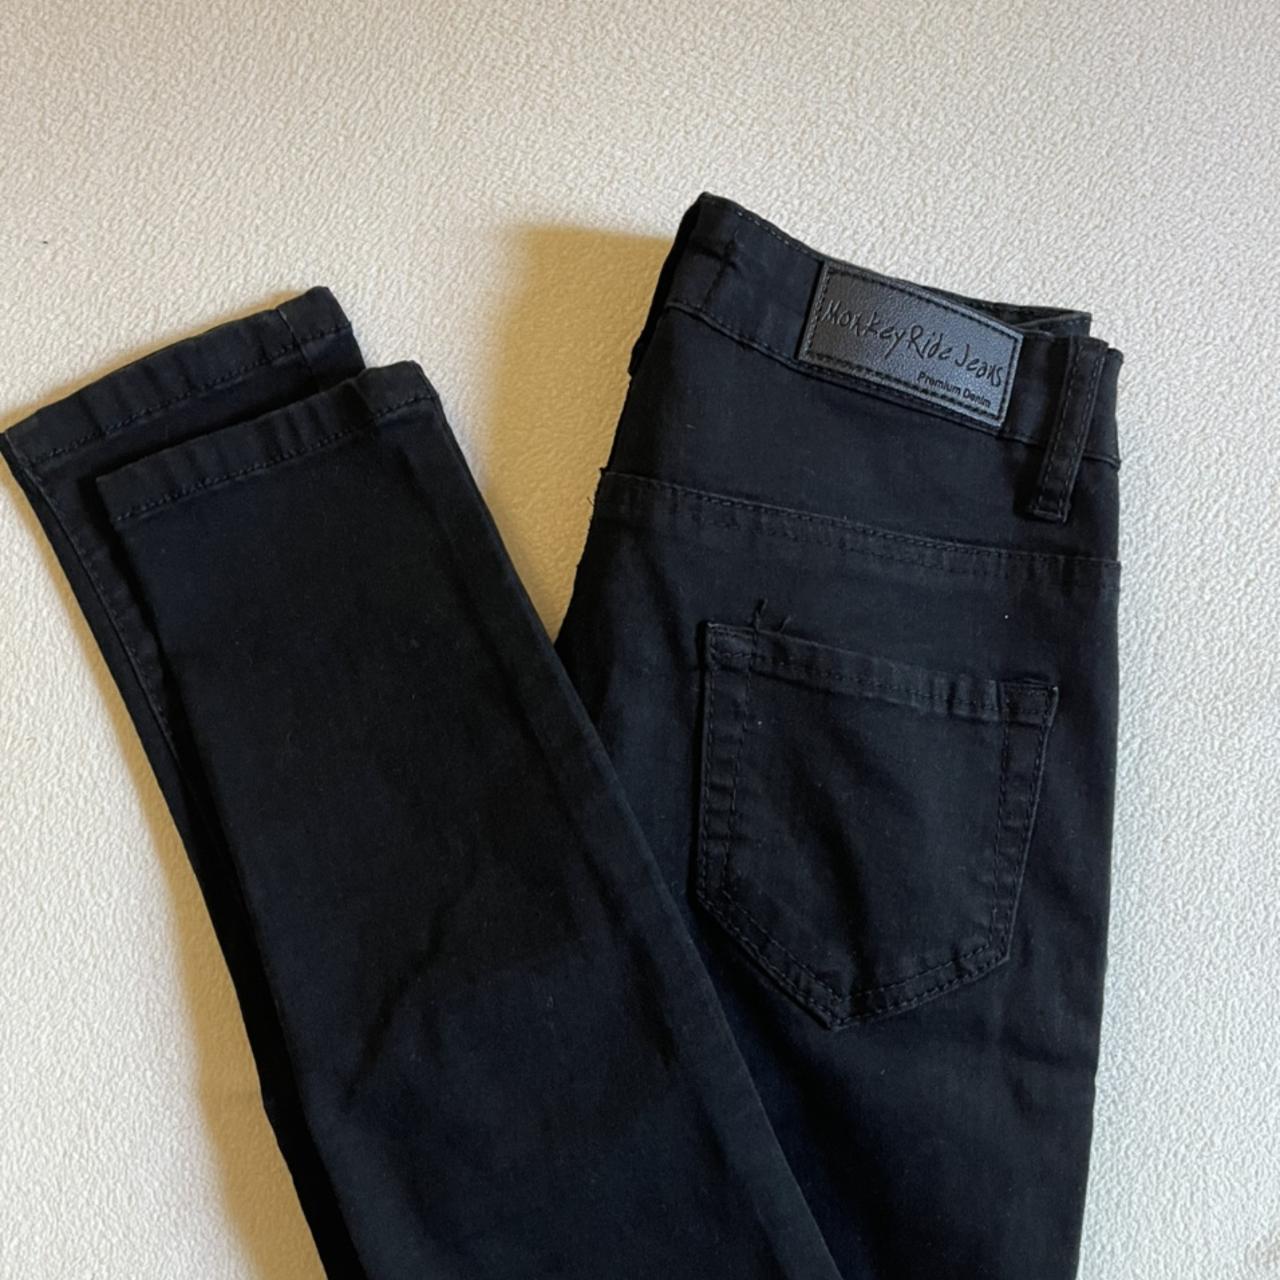 Black Monkey Ride jeans. Size 00 - Depop